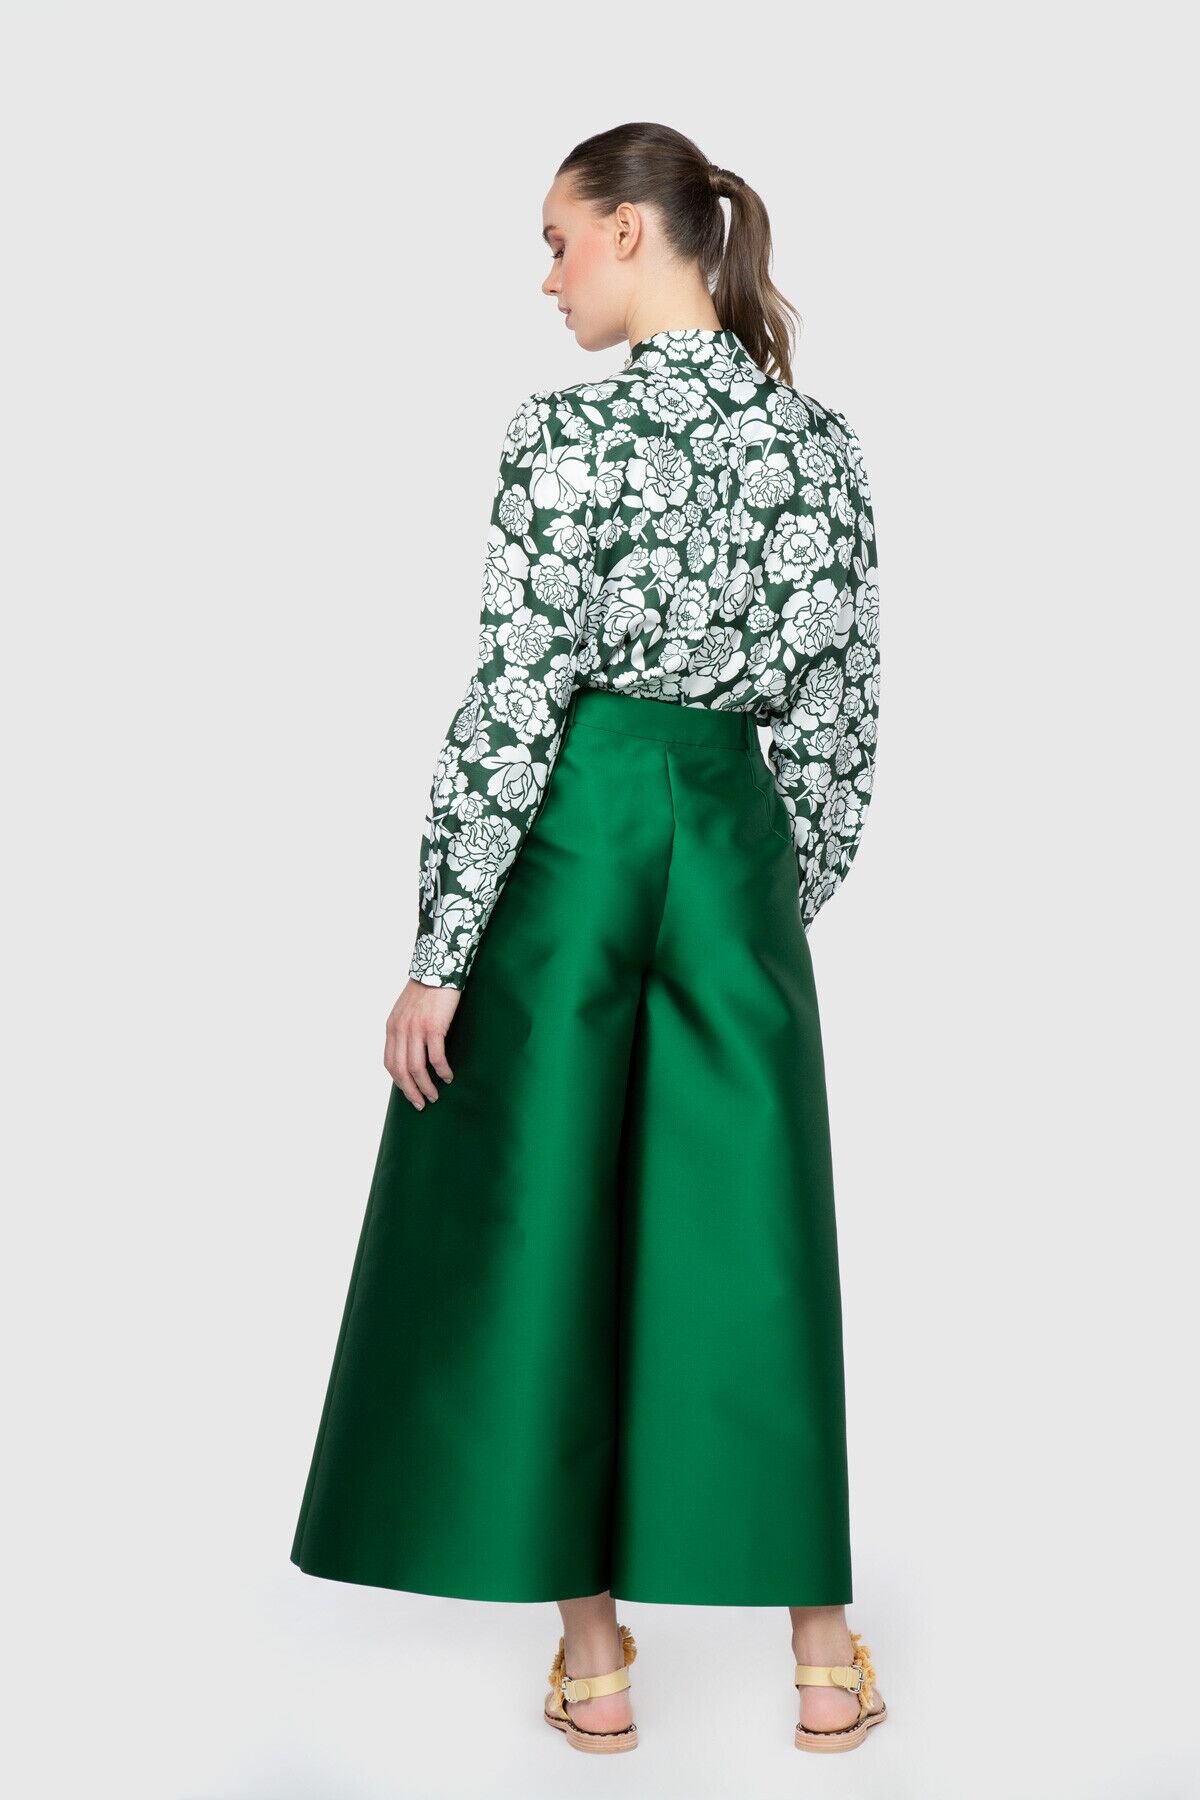 Dice Kayek İşleme Yaka Detaylı Desenli Yeşil Tasarım Bluz